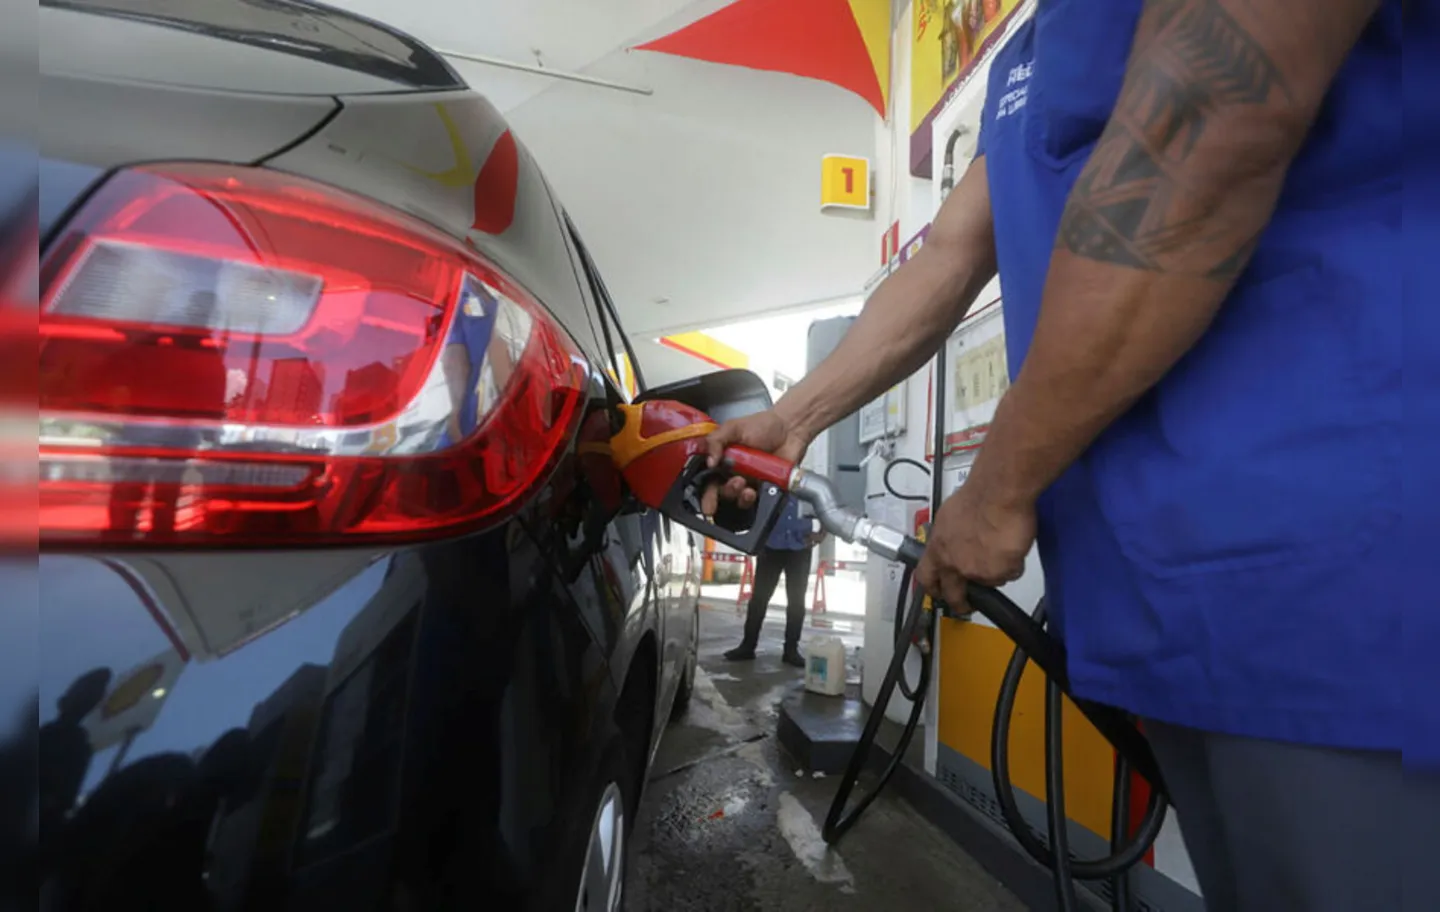 Expectativa é que preço dos combustíveis caia  os postos com redução do imposto pelos estados